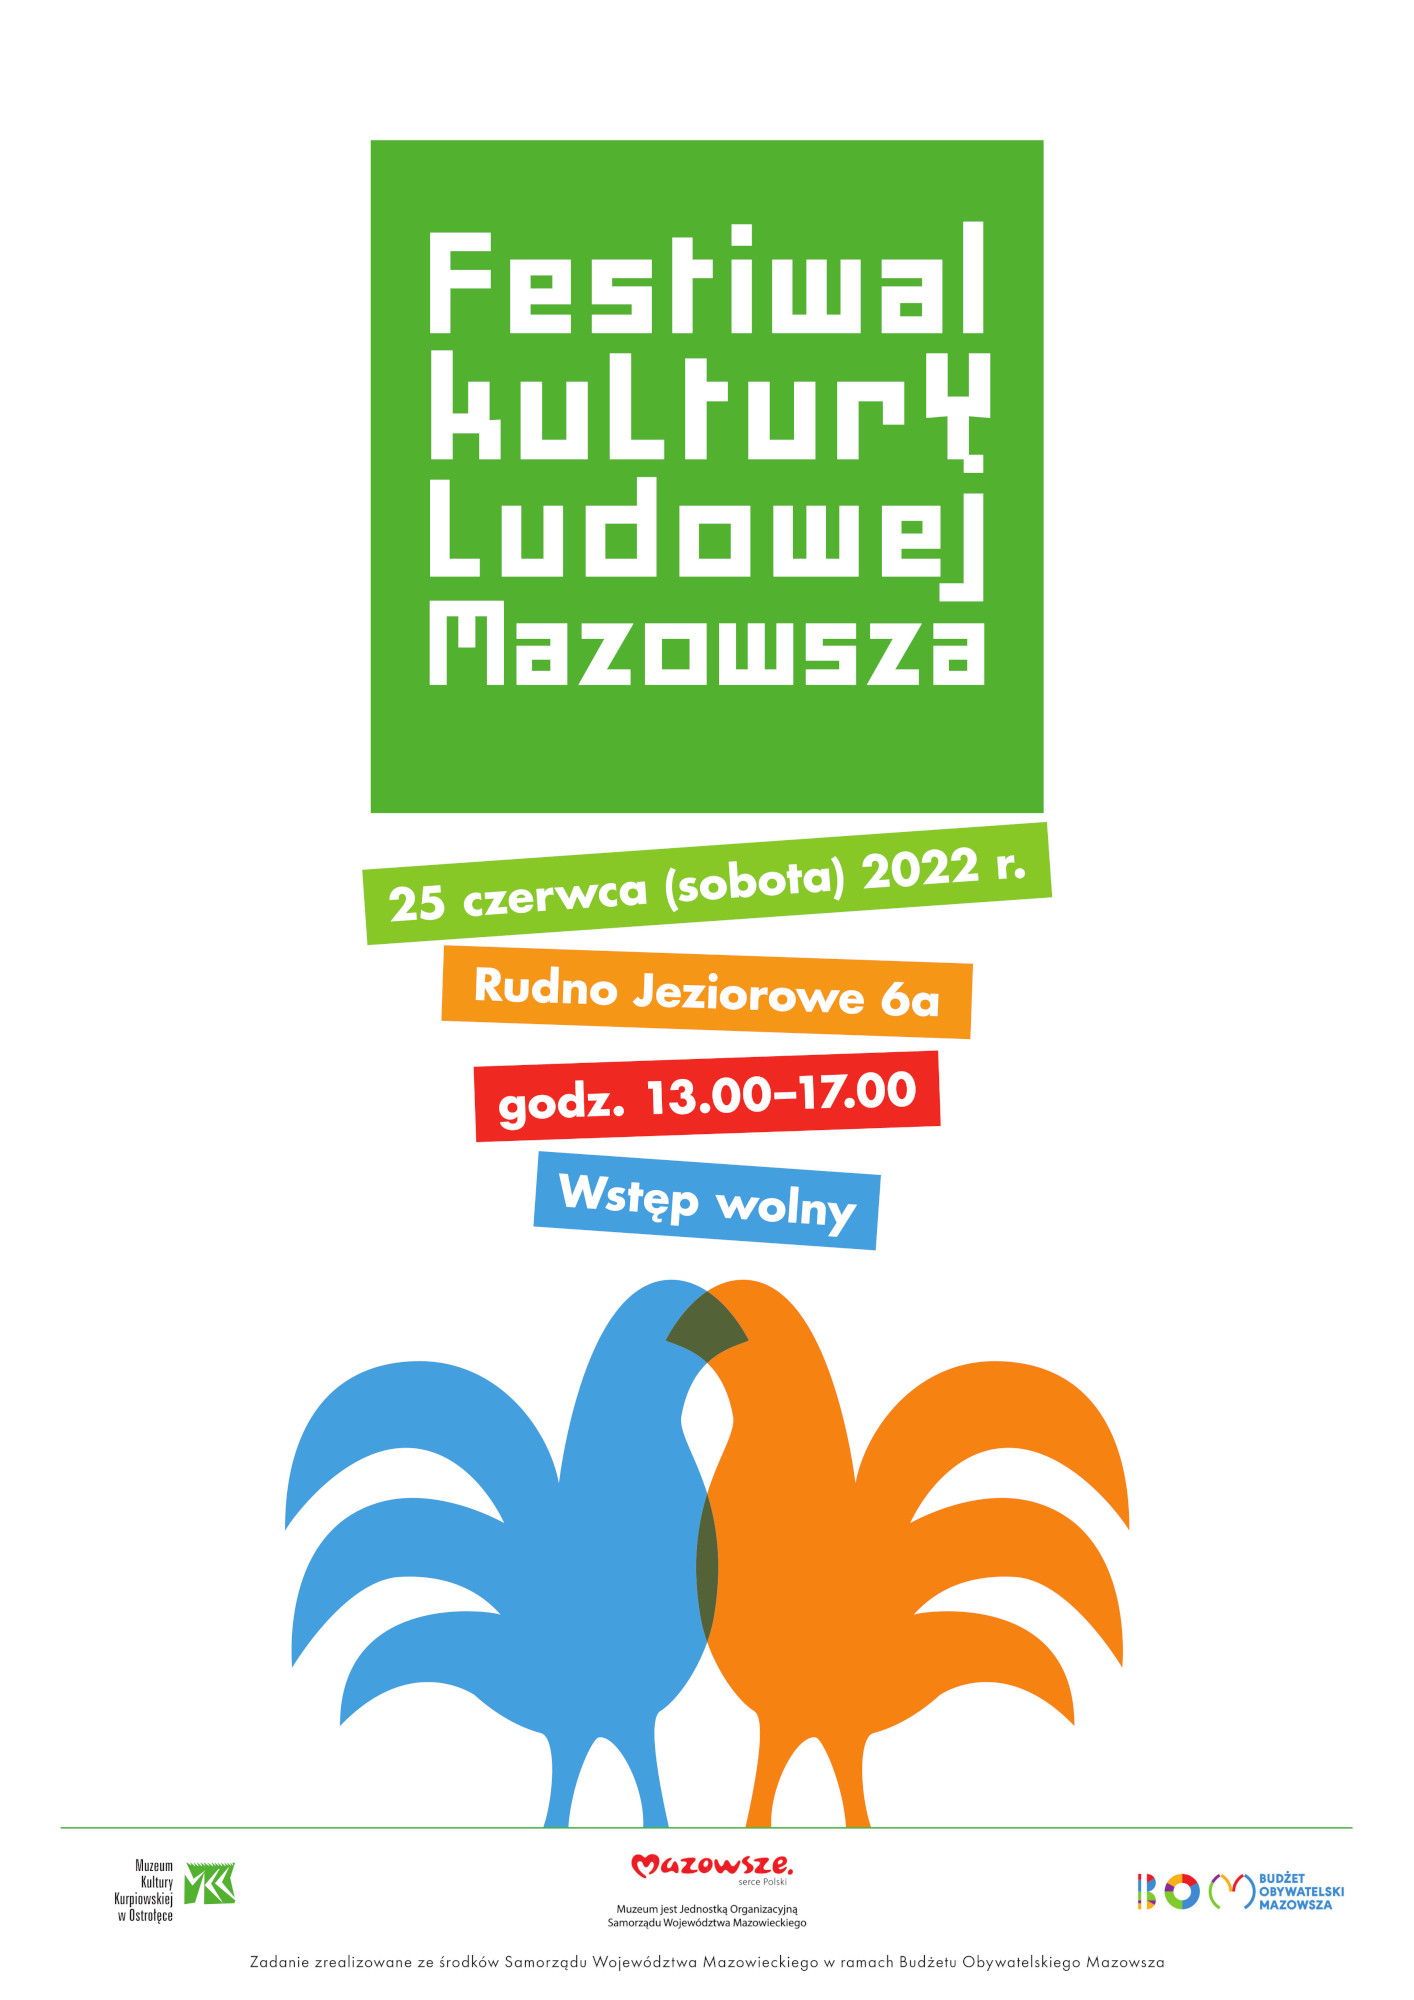 Festiwal Kultury Ludowej Mazowsza